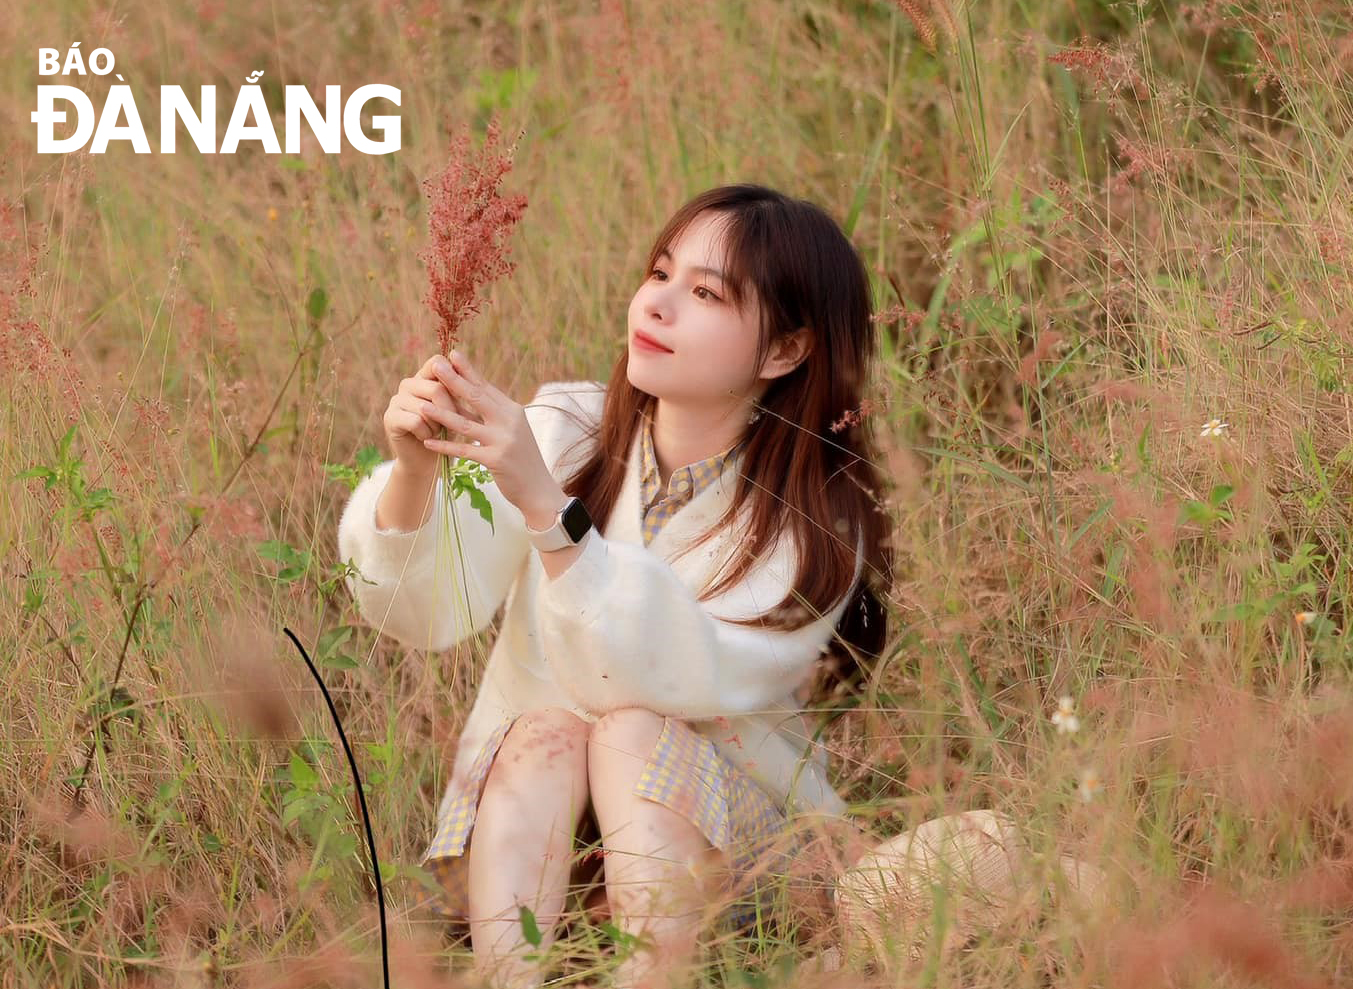 Let's explore Da Nang's romantic Bai Chay